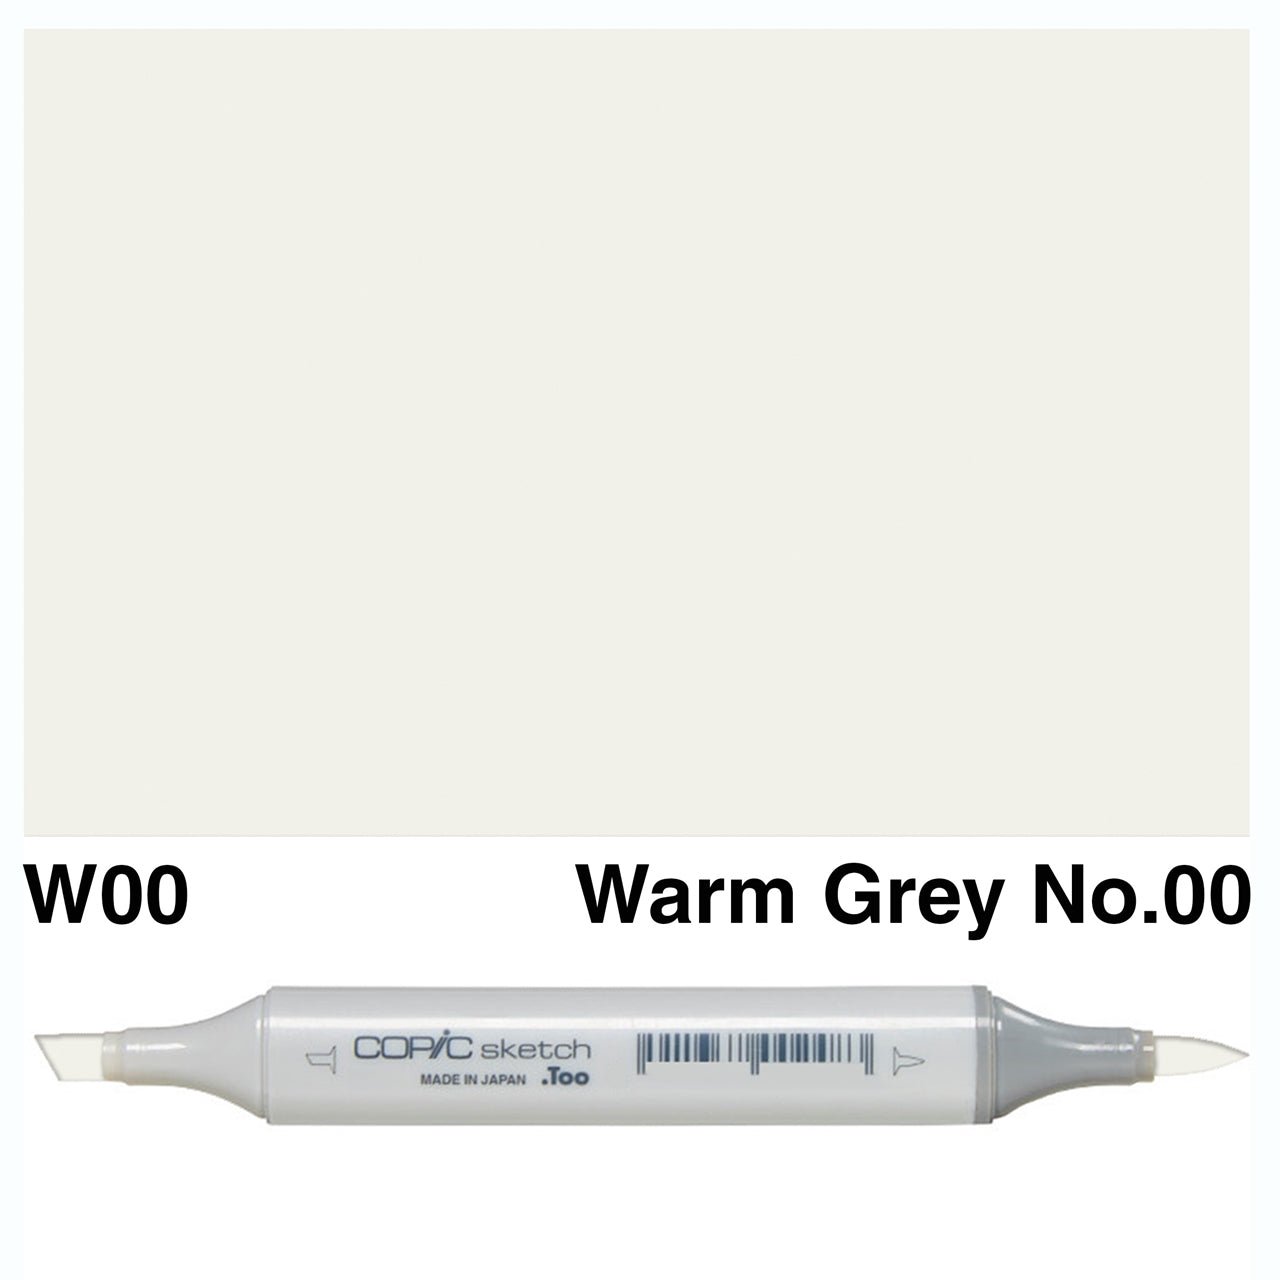 Copic Sketch W00 Warm Gray No.00 - theartshop.com.au